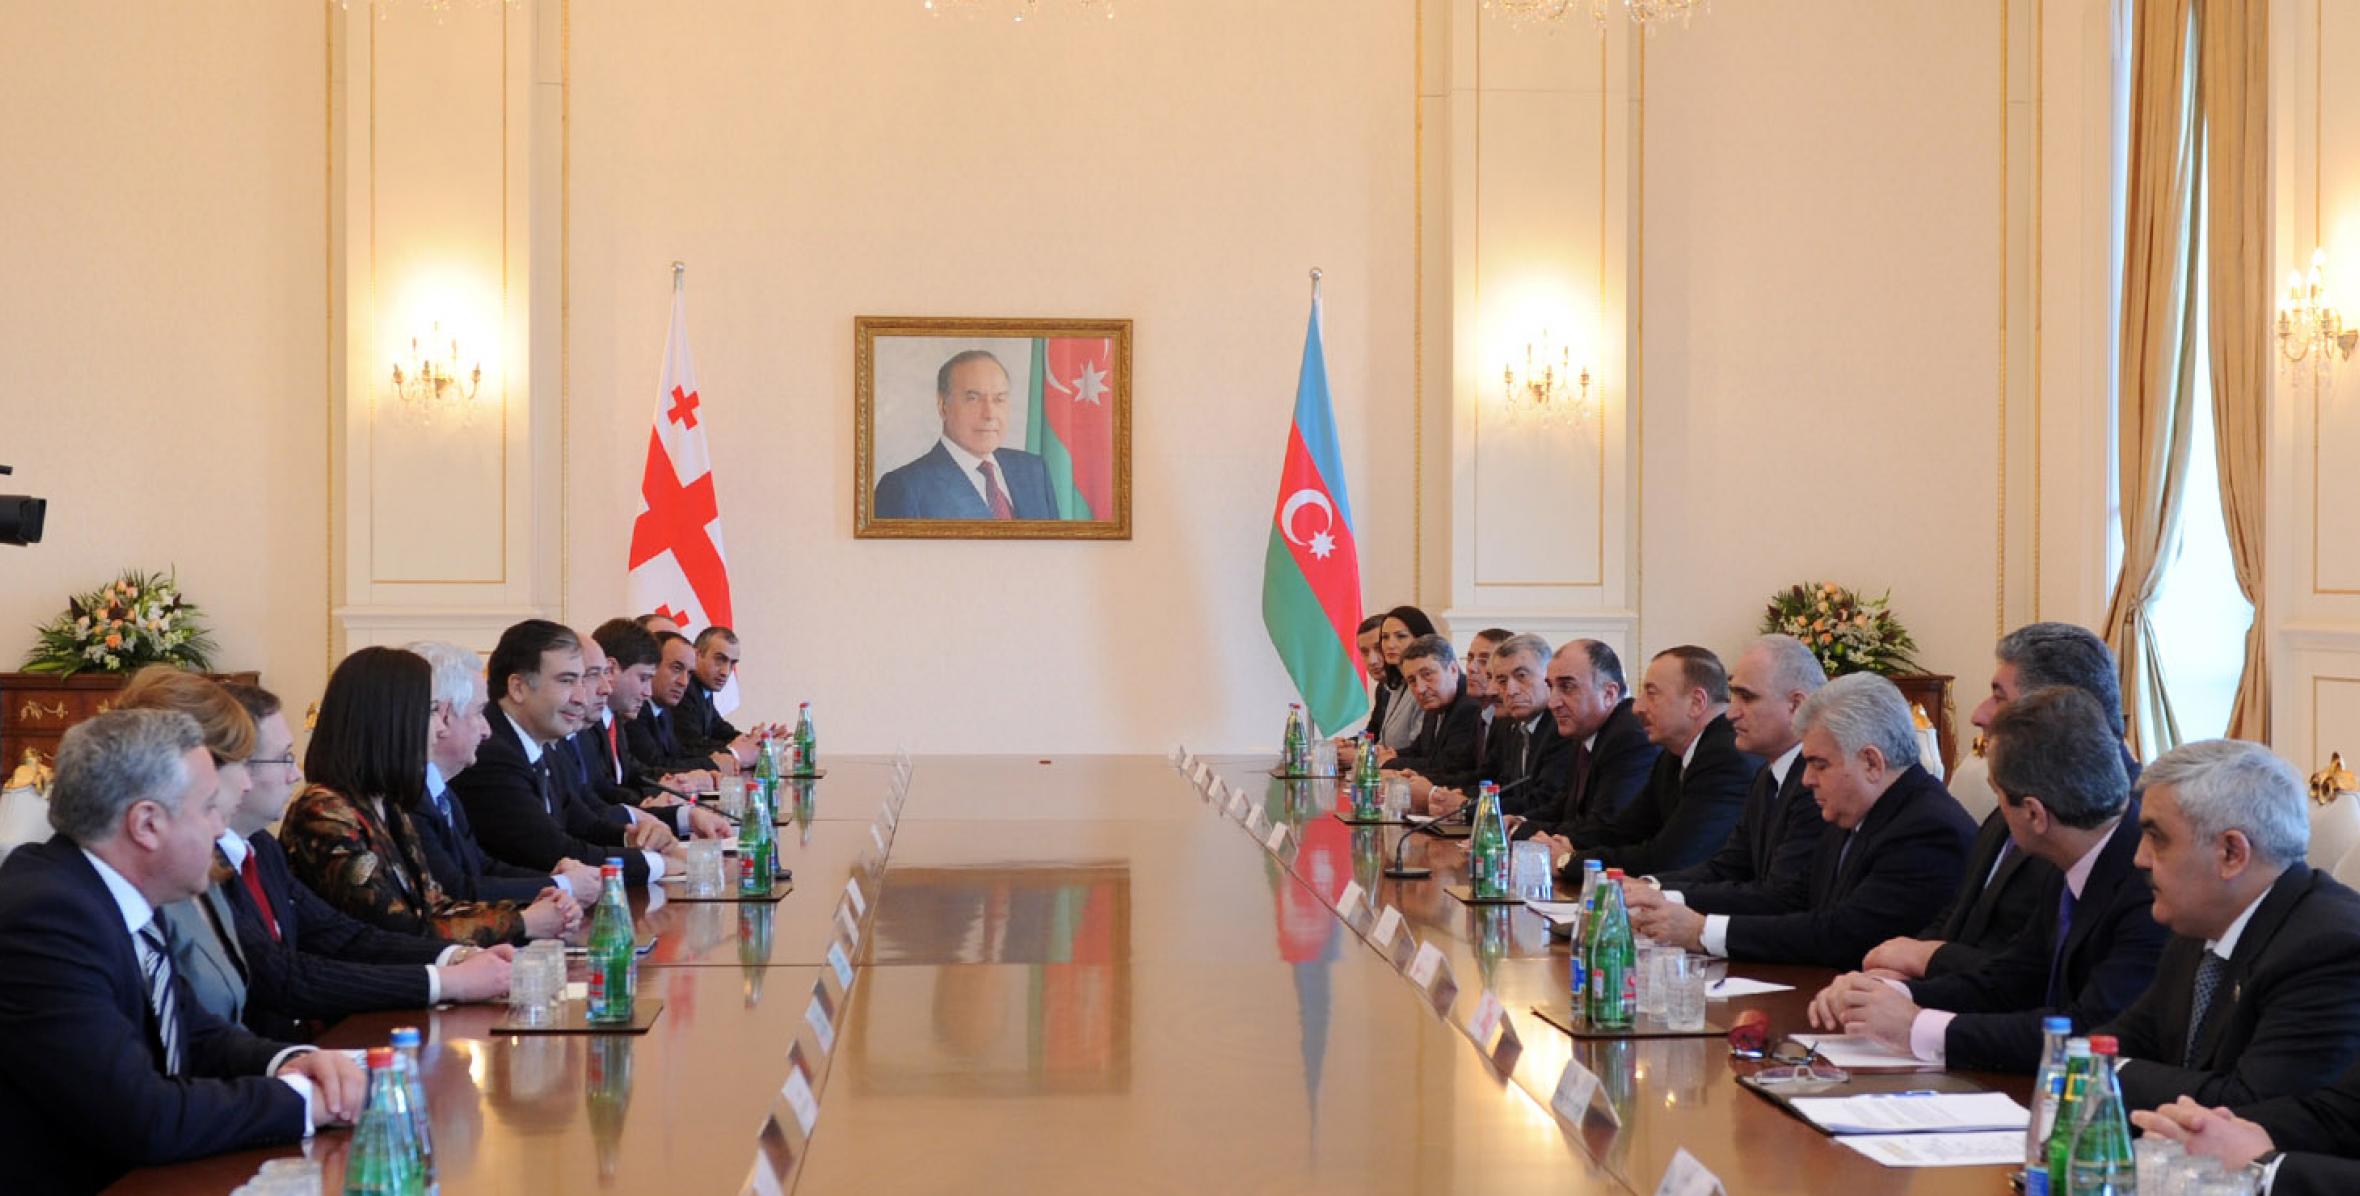 Состоялась встреча Ильхама Алиева и Президента Грузии Михеила Саакашвили в расширенном составе с участием делегаций